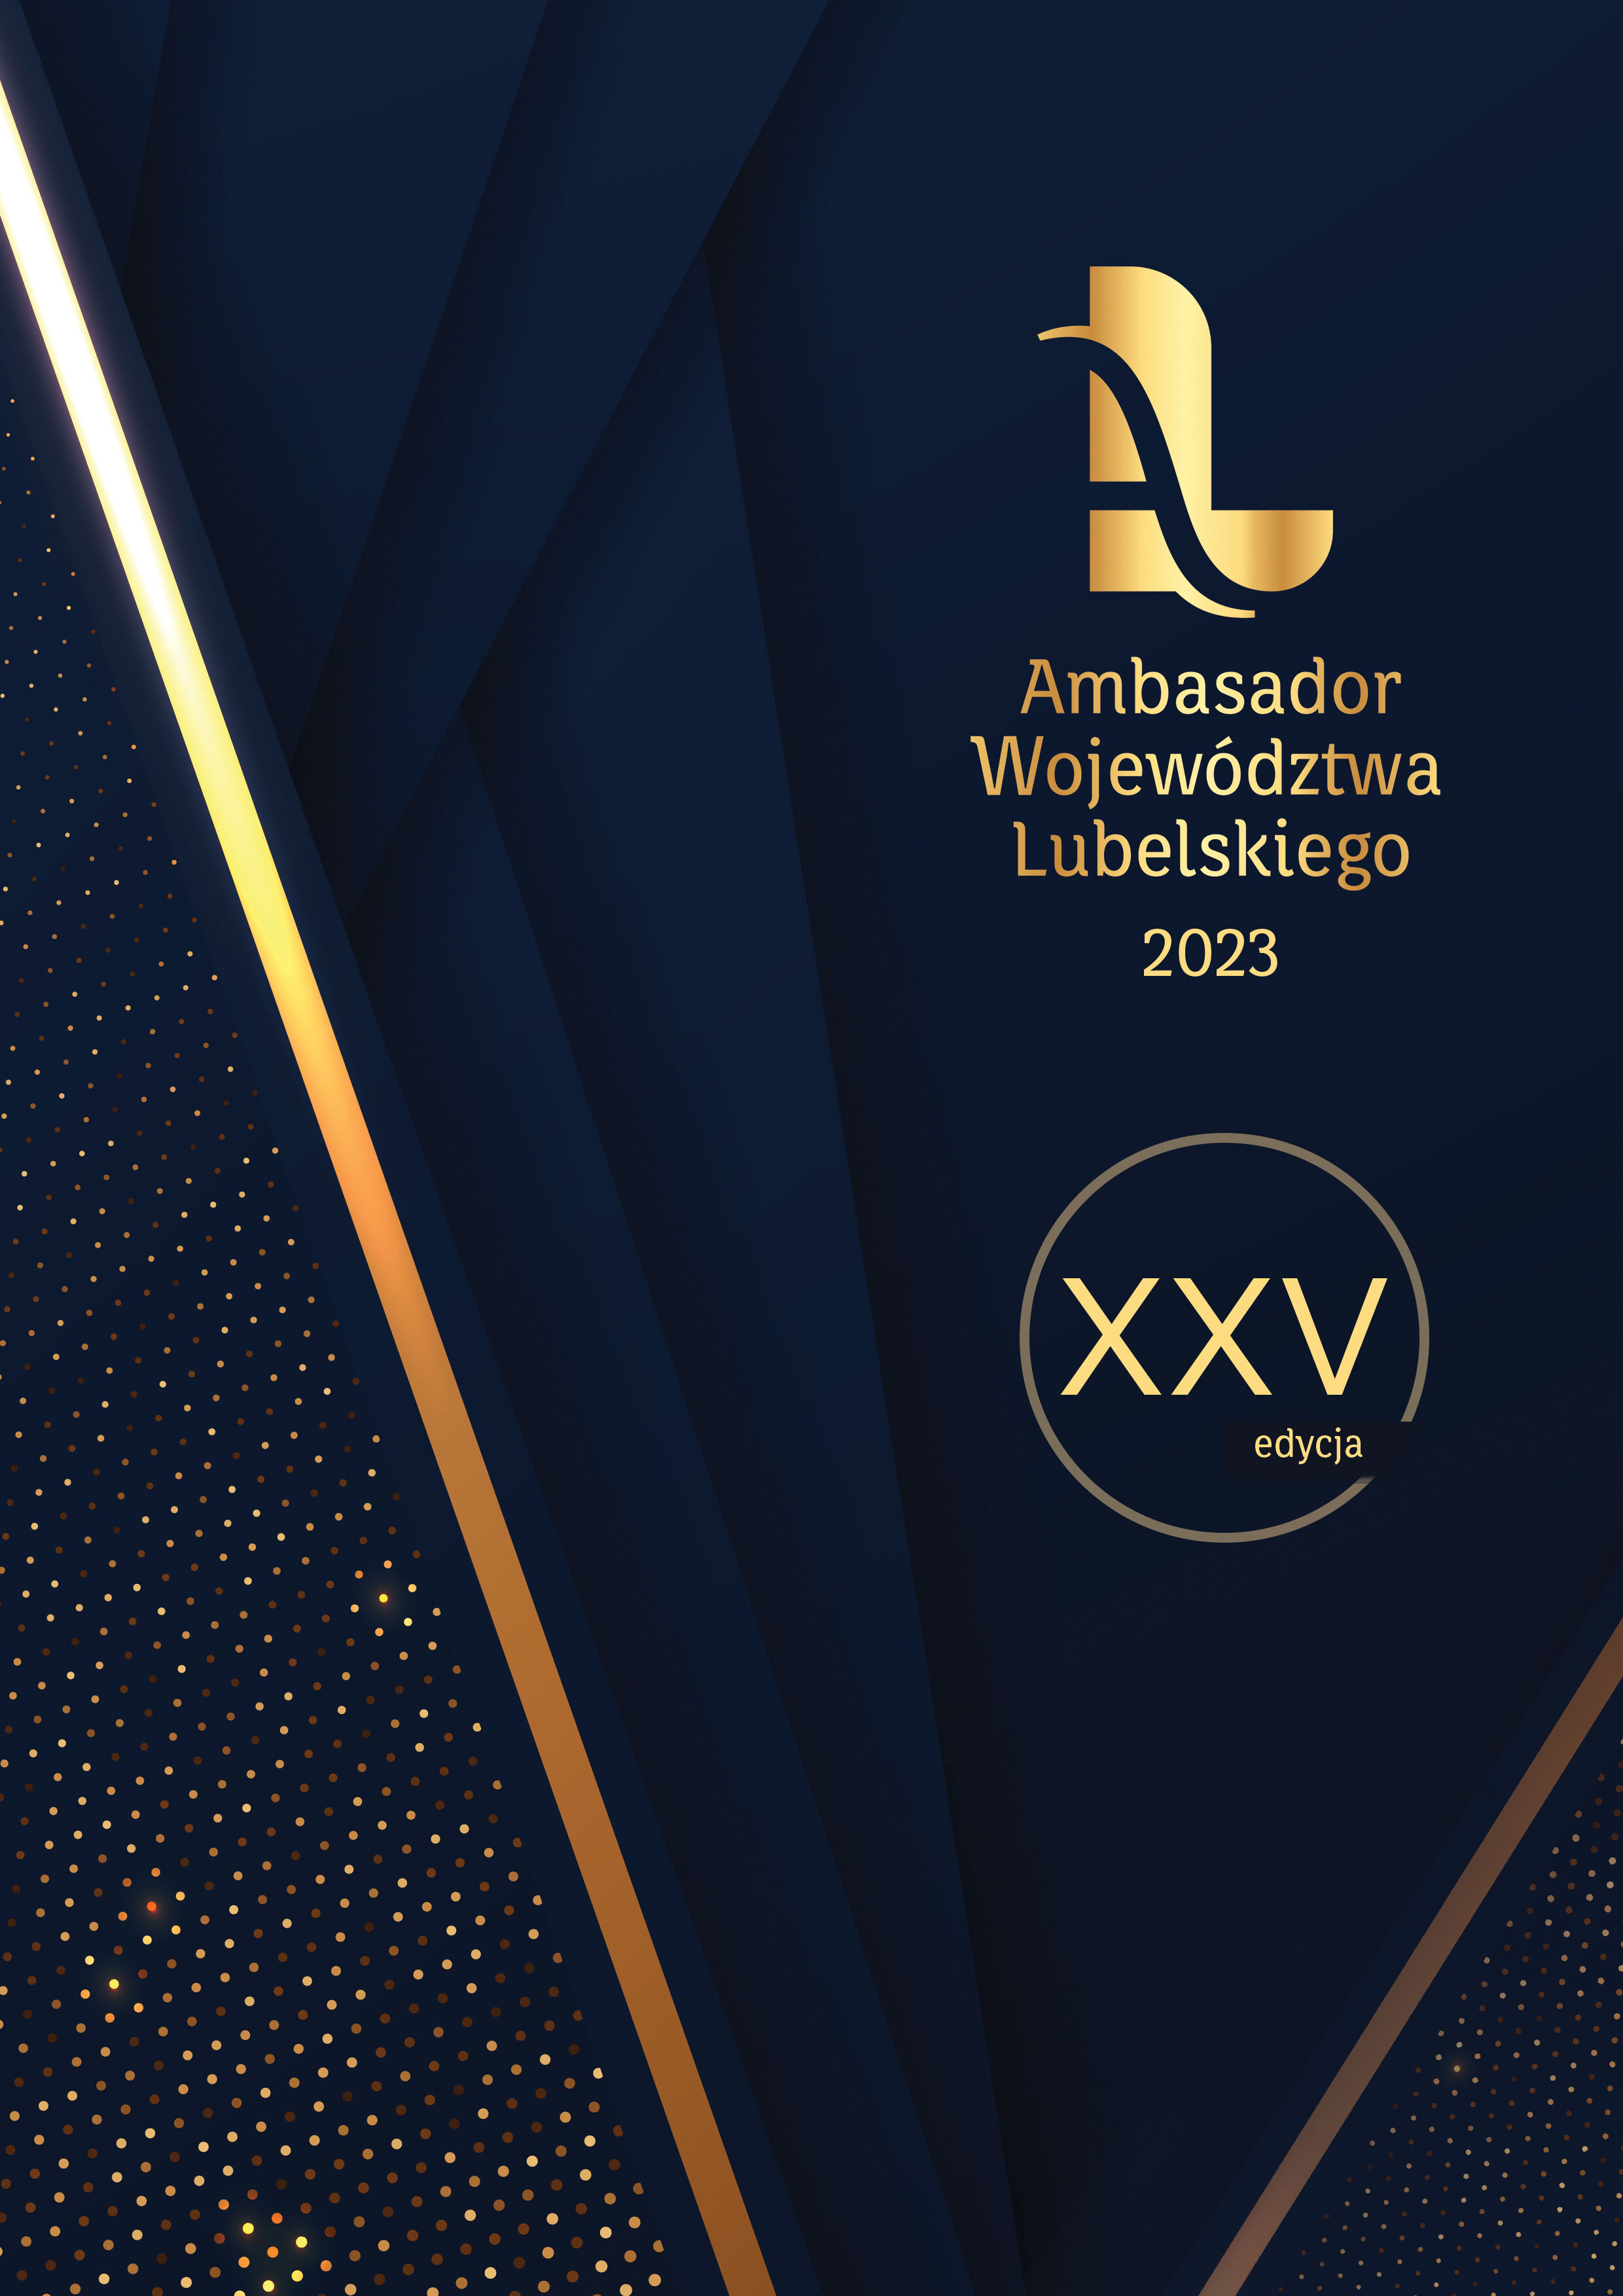 To zdjęcie przedstawia elegancki graficzny projekt z tekstem "Ambasador Województwa Lubelskiego 2023" i "XXV edycja" na ciemnoniebieskim tle z złotymi akcentami.